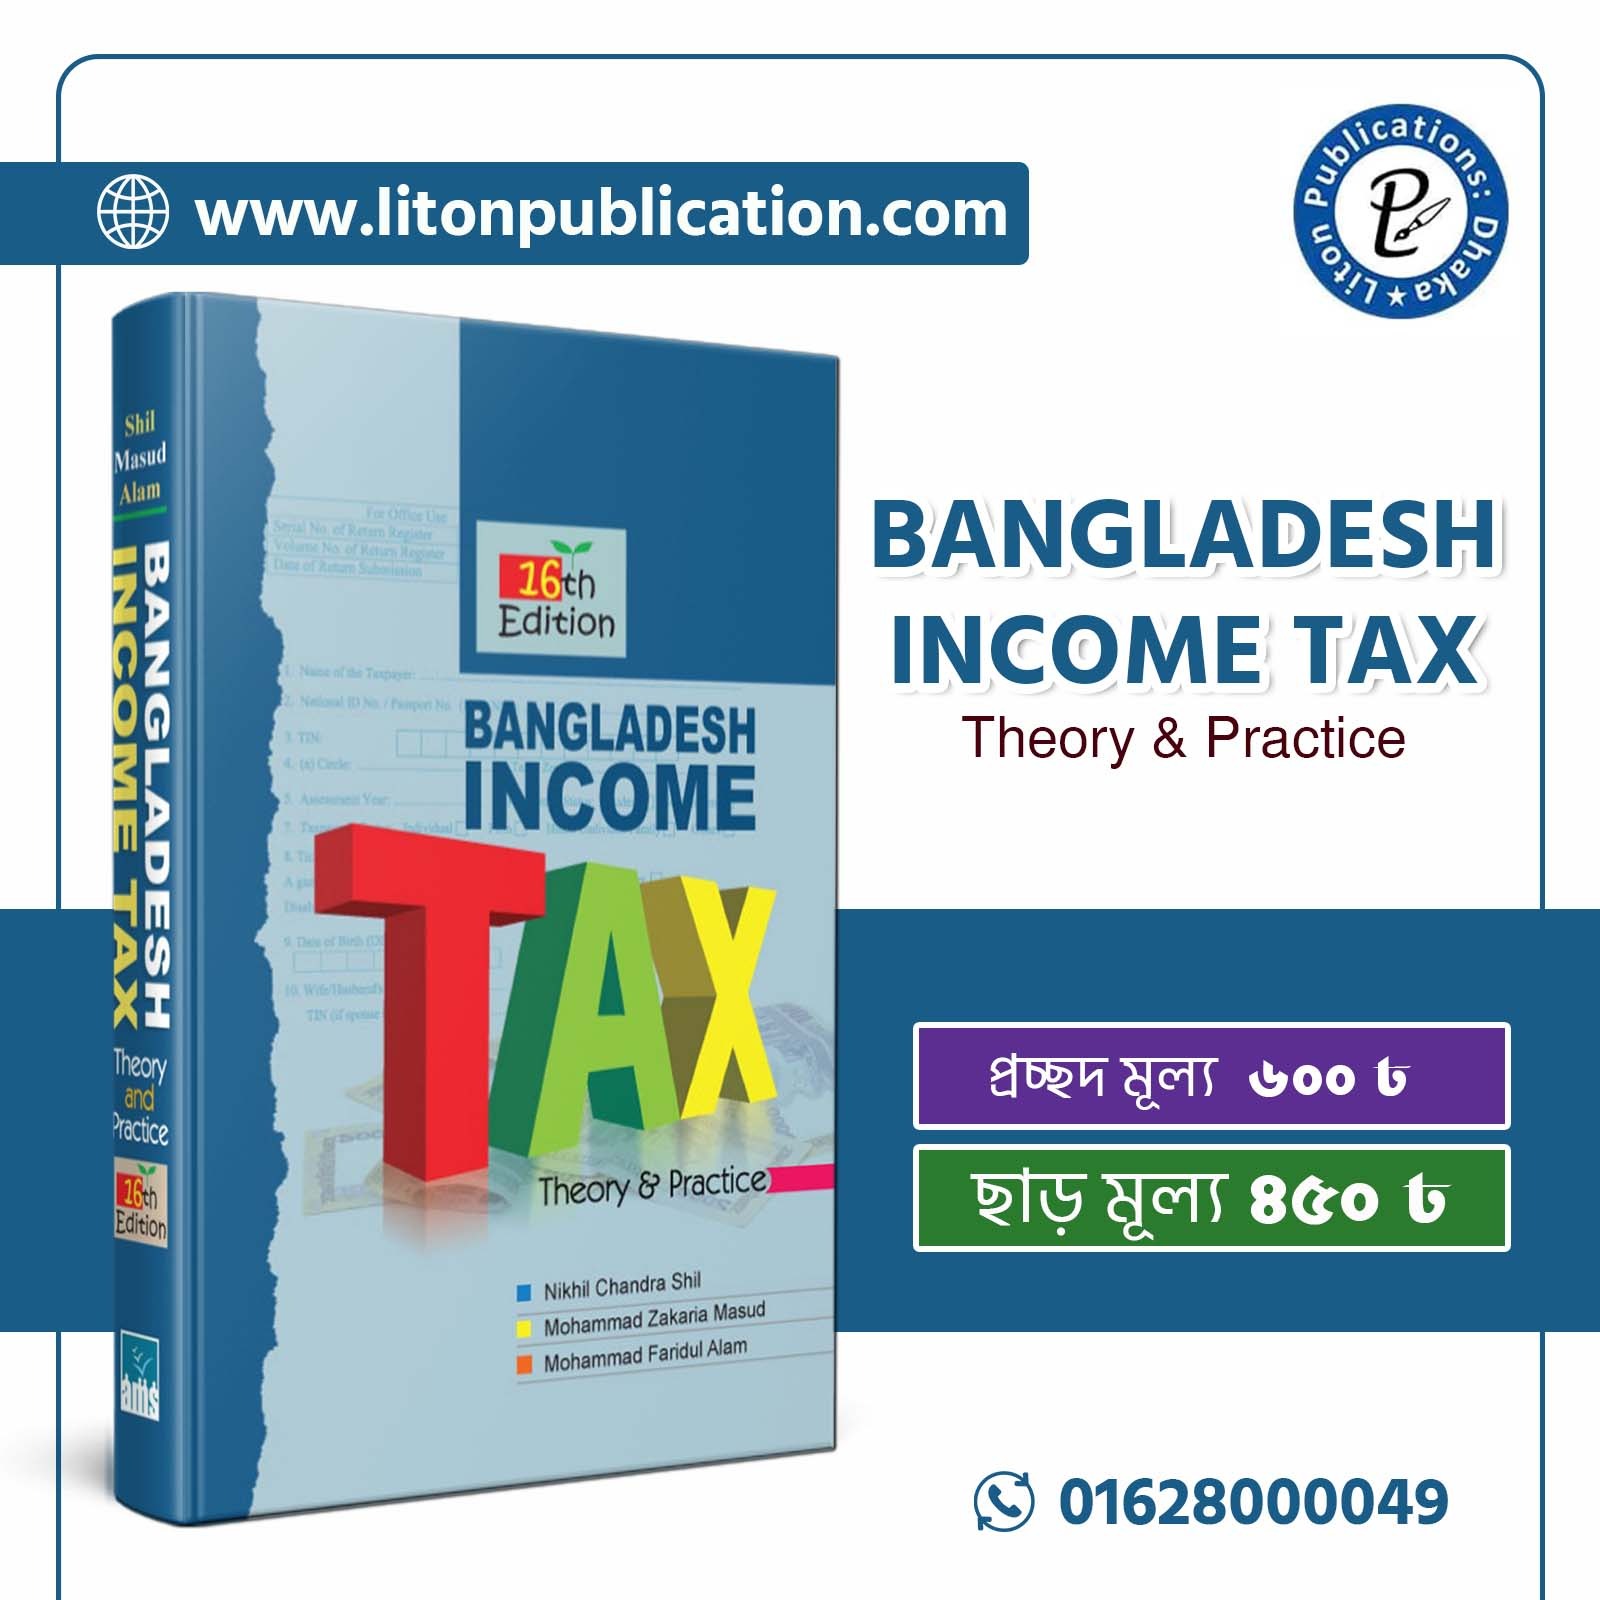 BANGLADESH INCOME TAX